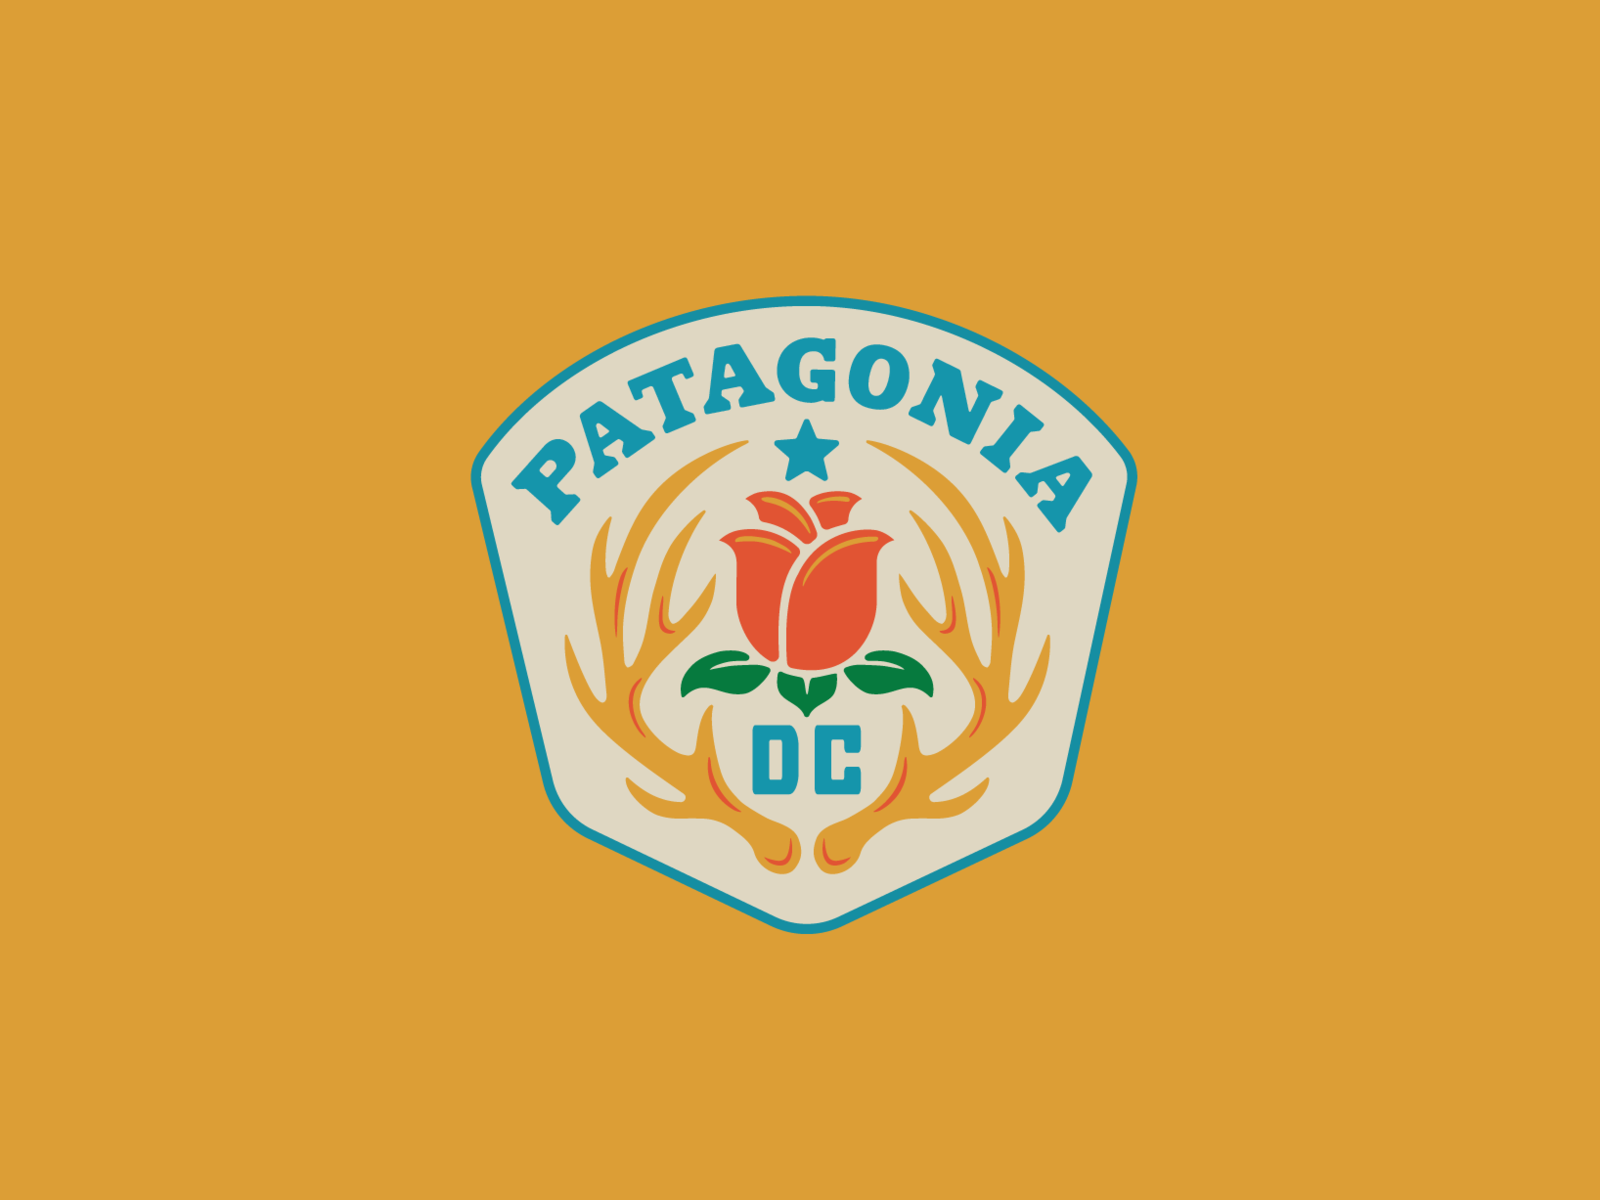 Patagonia DC III by Lauren Dickens on Dribbble